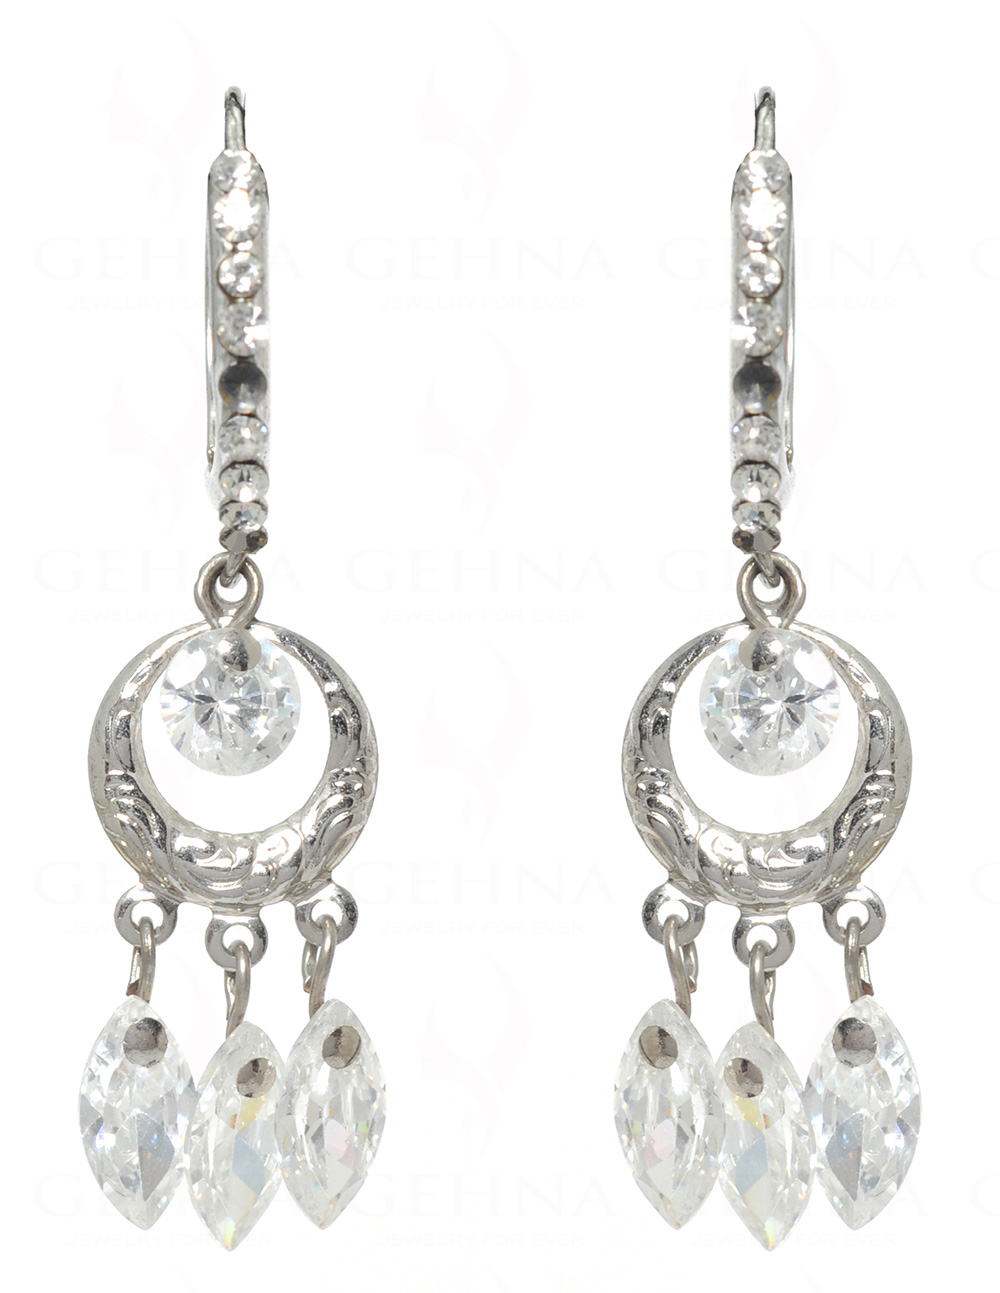 White Zircon Elegant Pair Of Earrings FE-1051